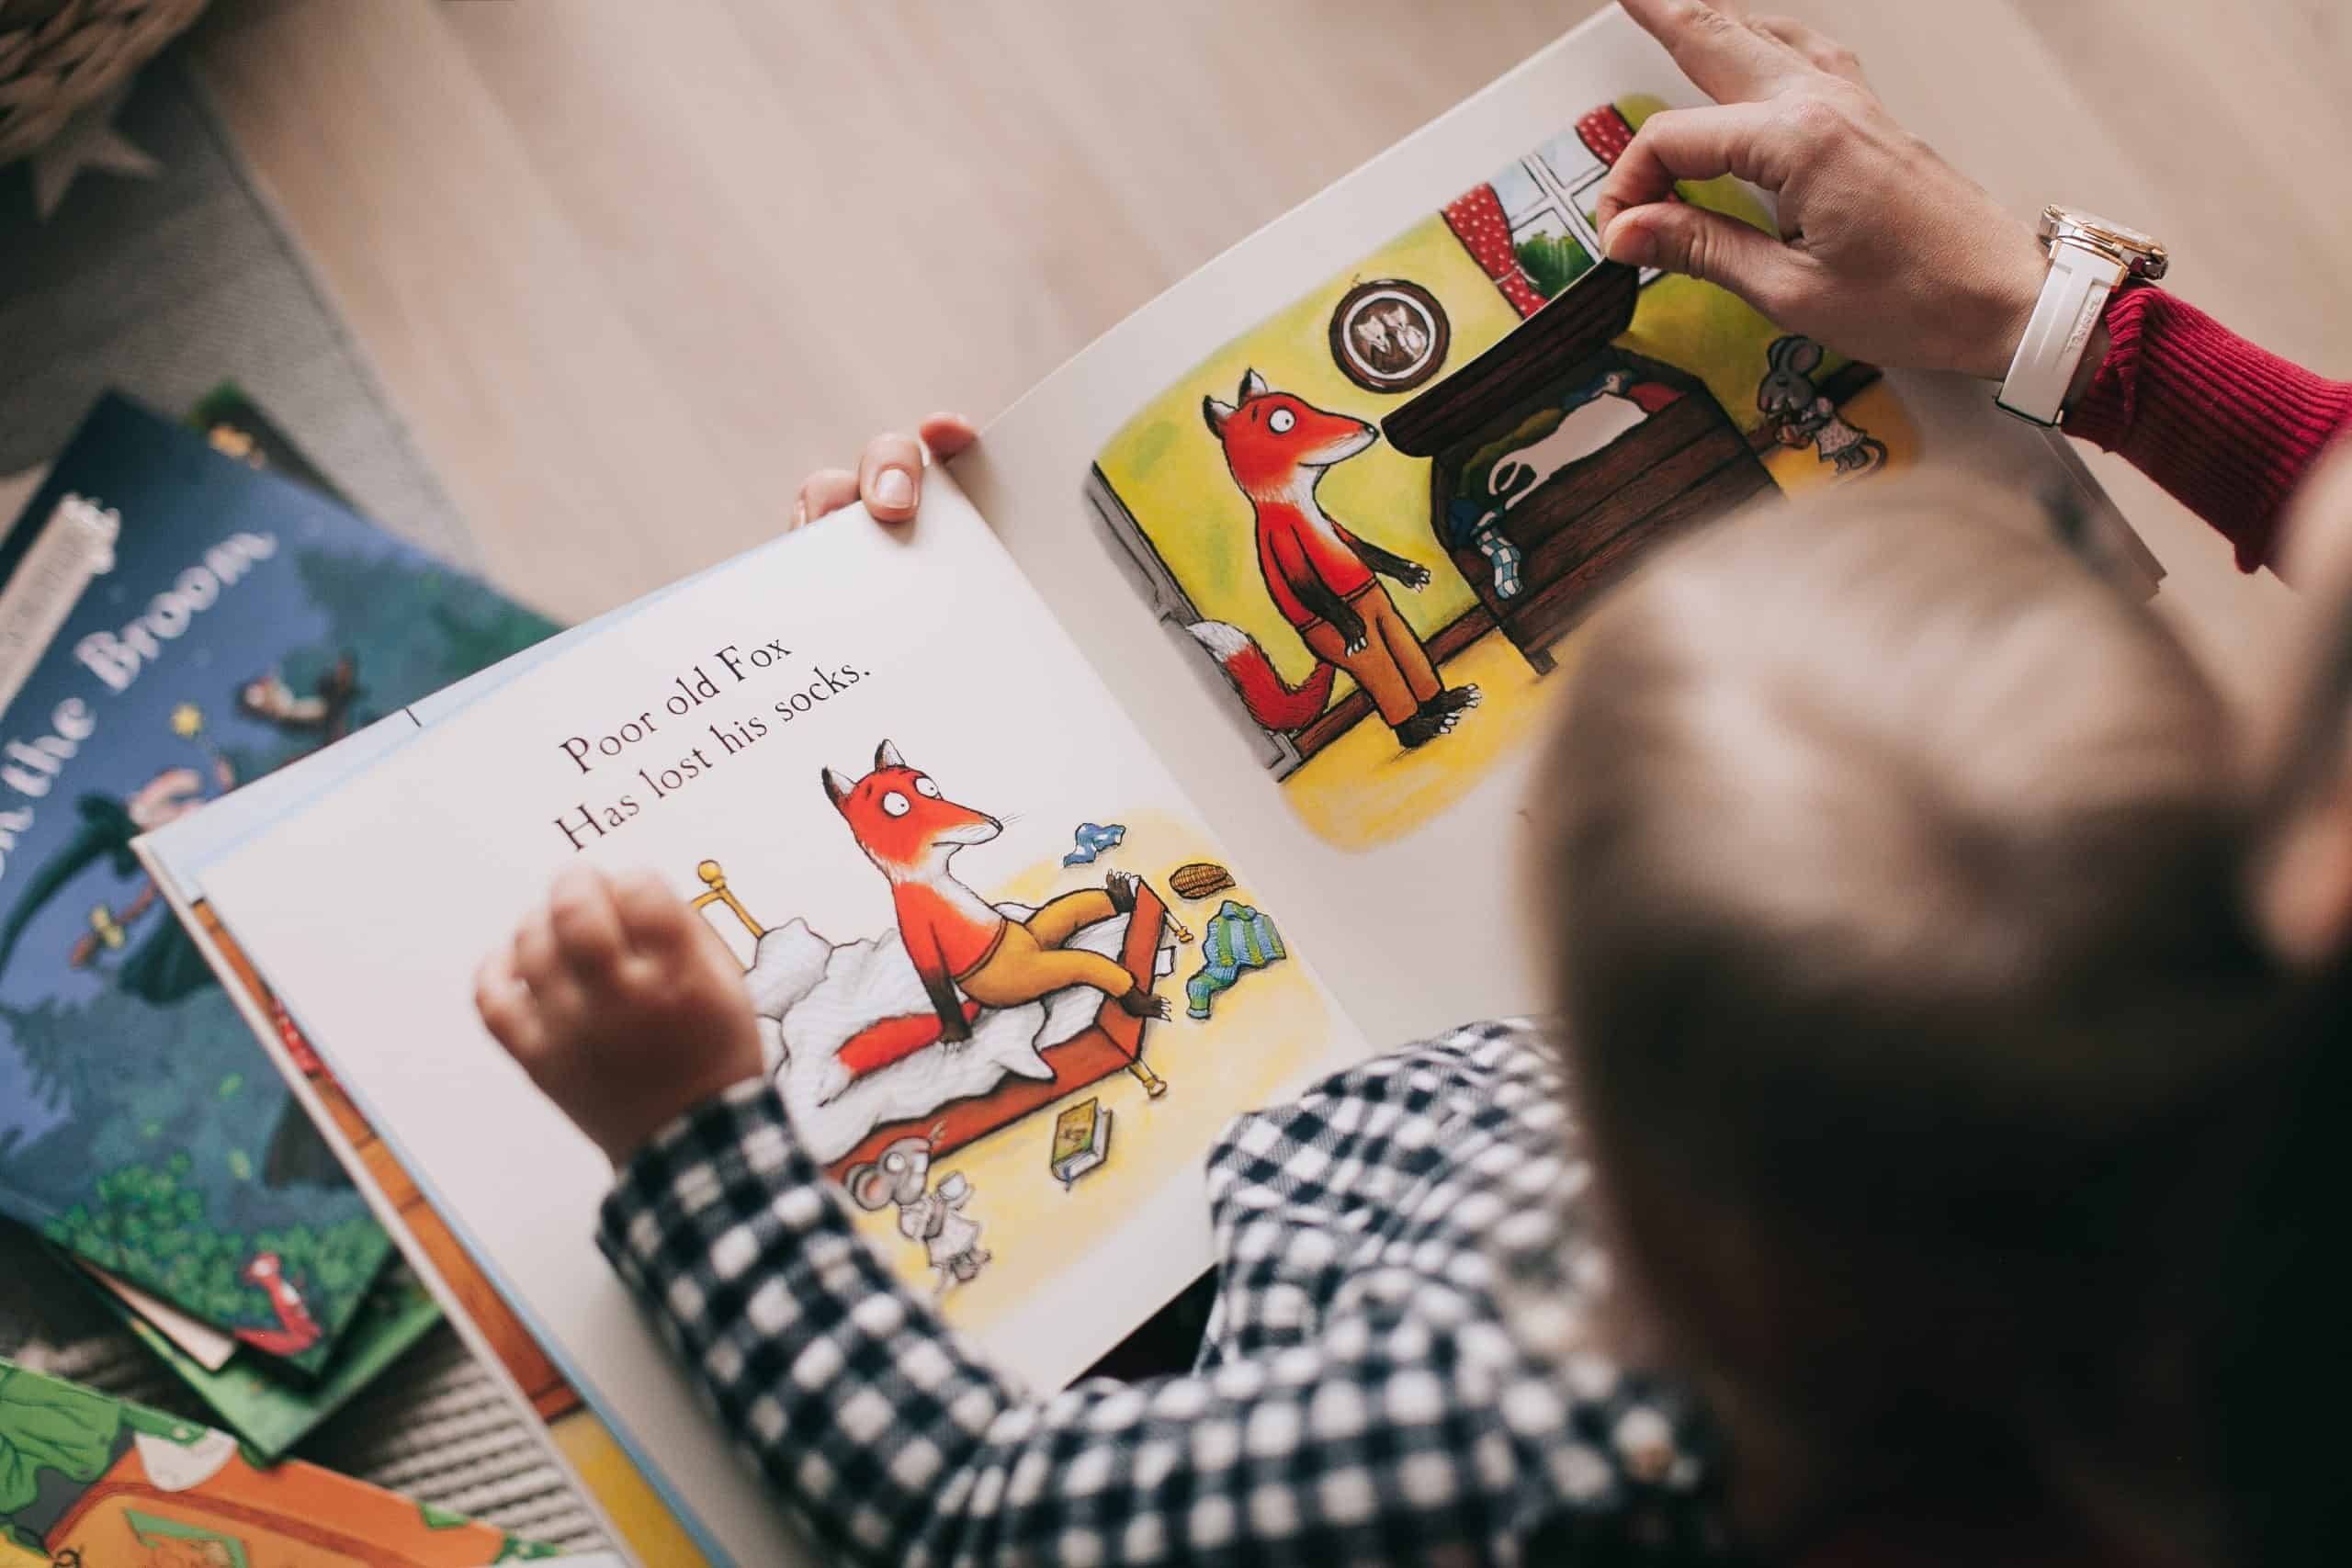 Children's books recalled